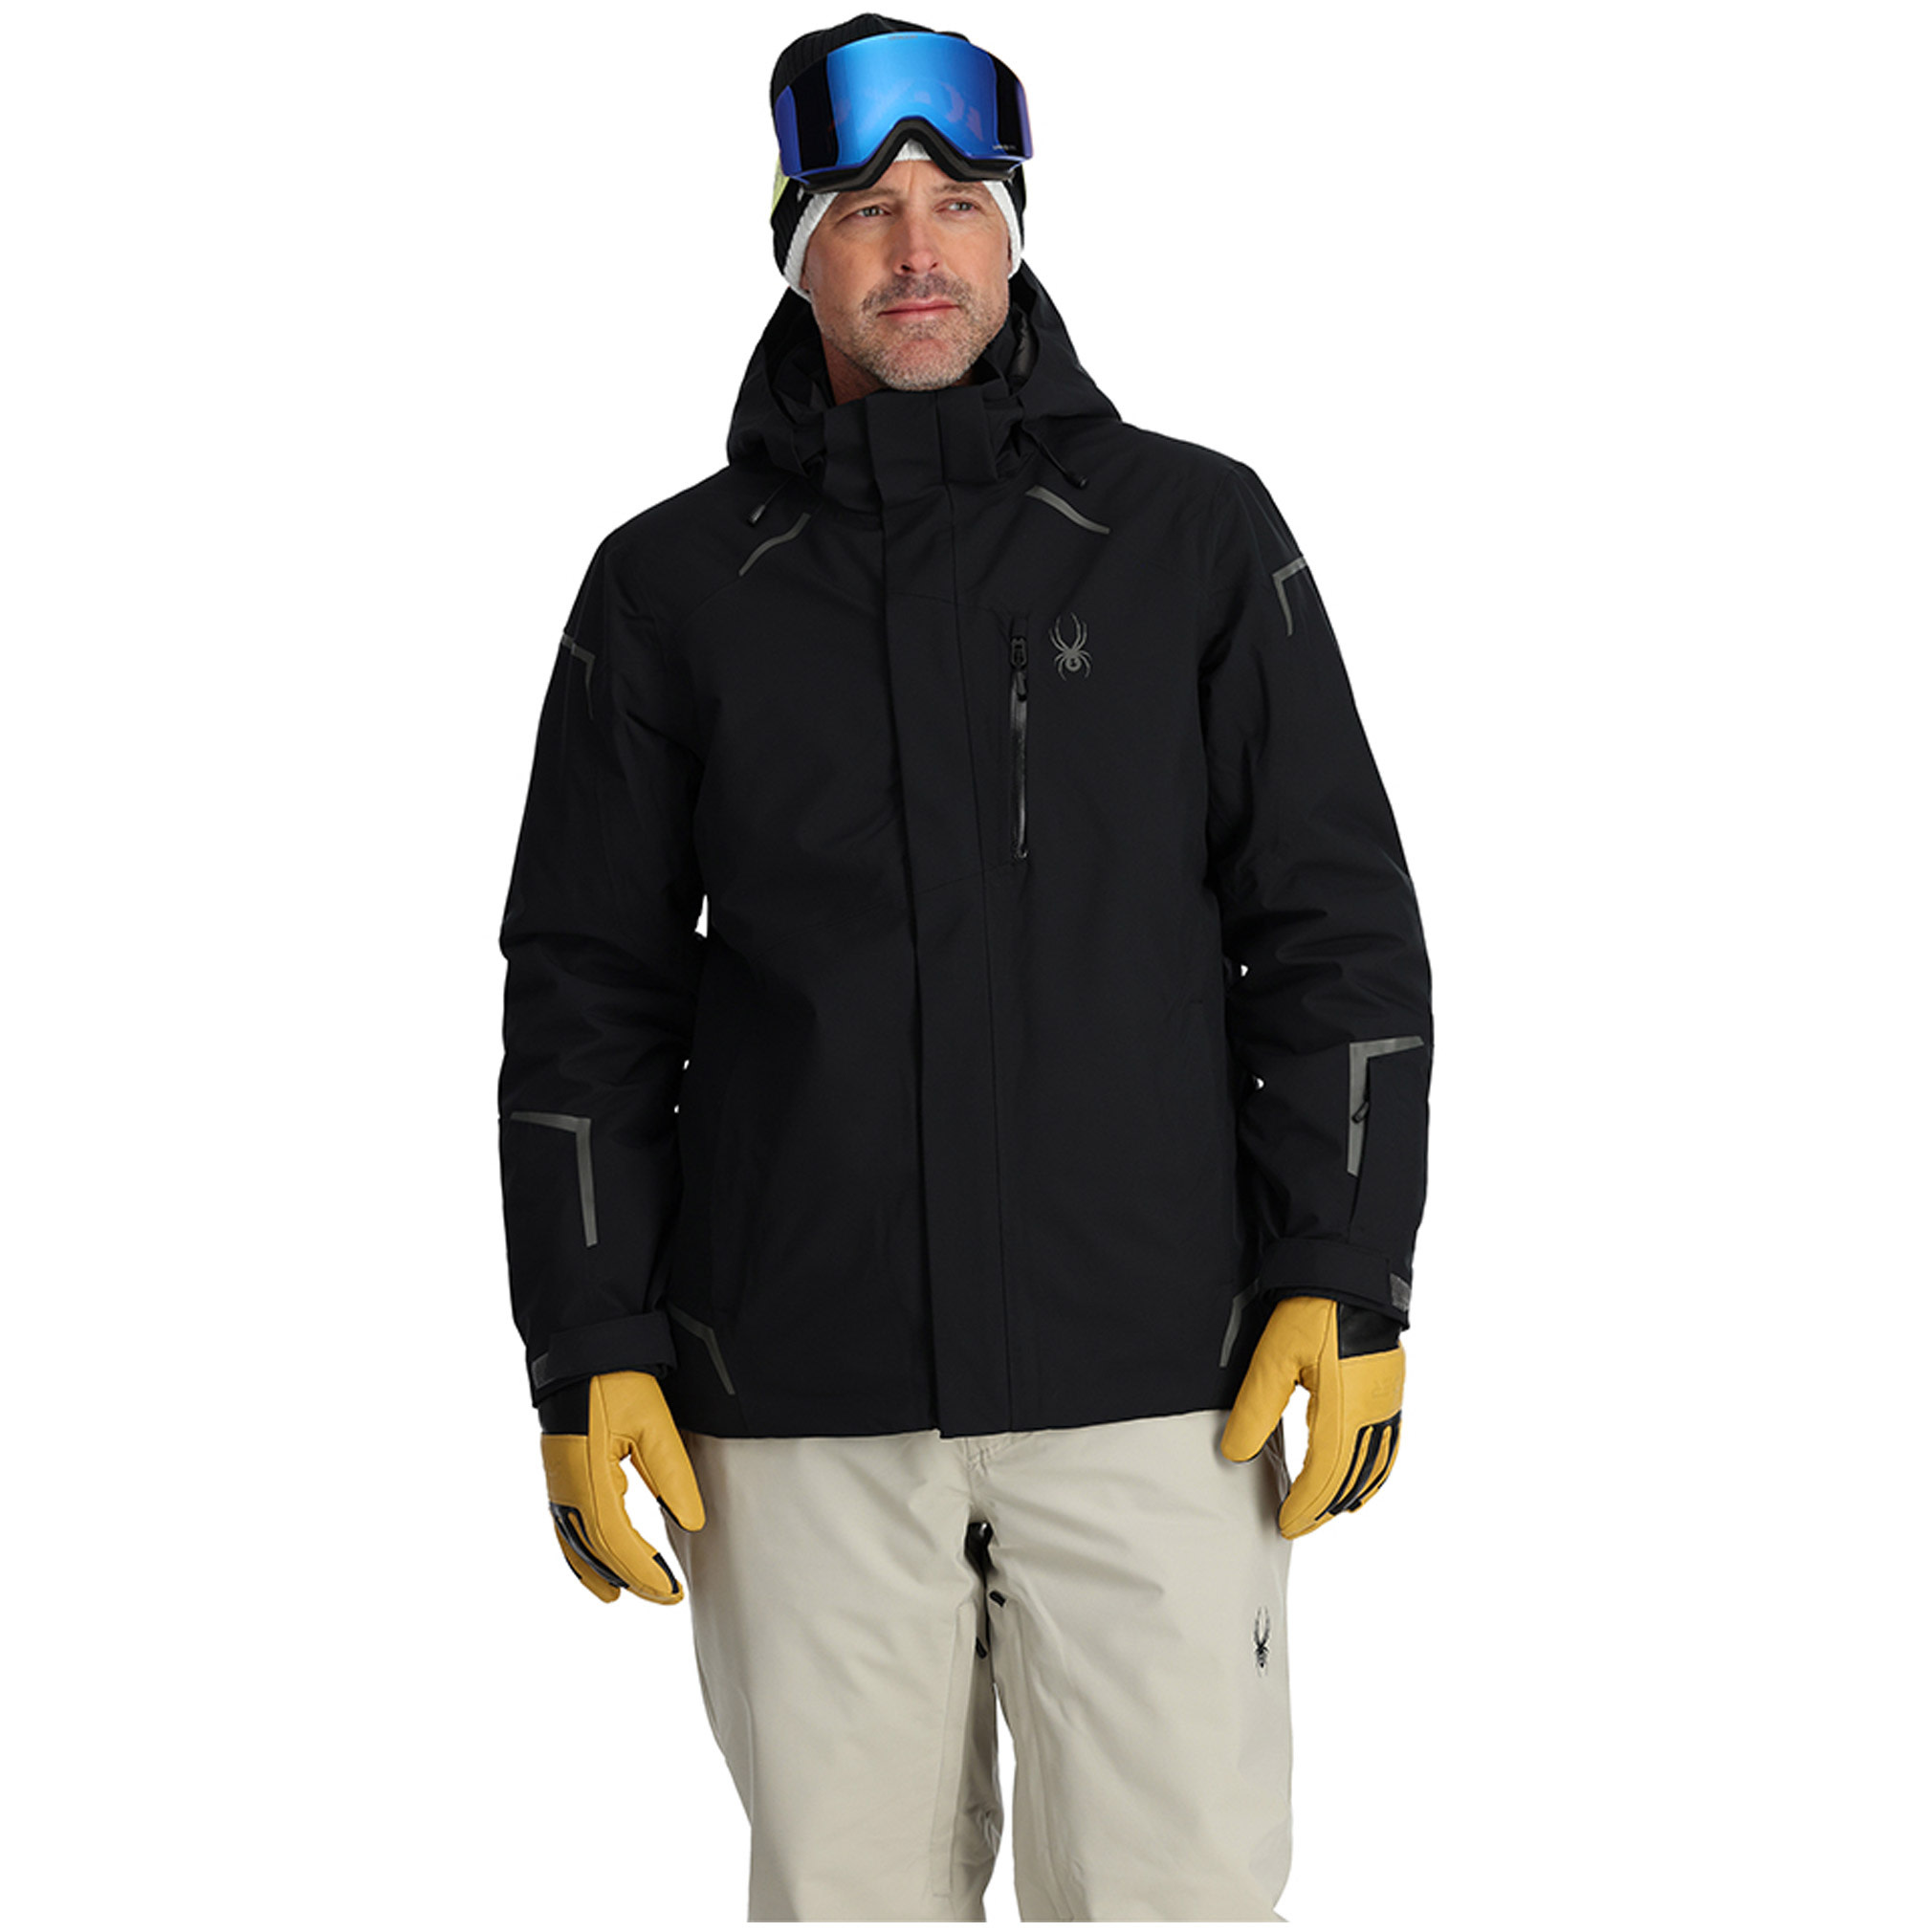 Spyder: manteaux et vêtements de ski pour homme et femme